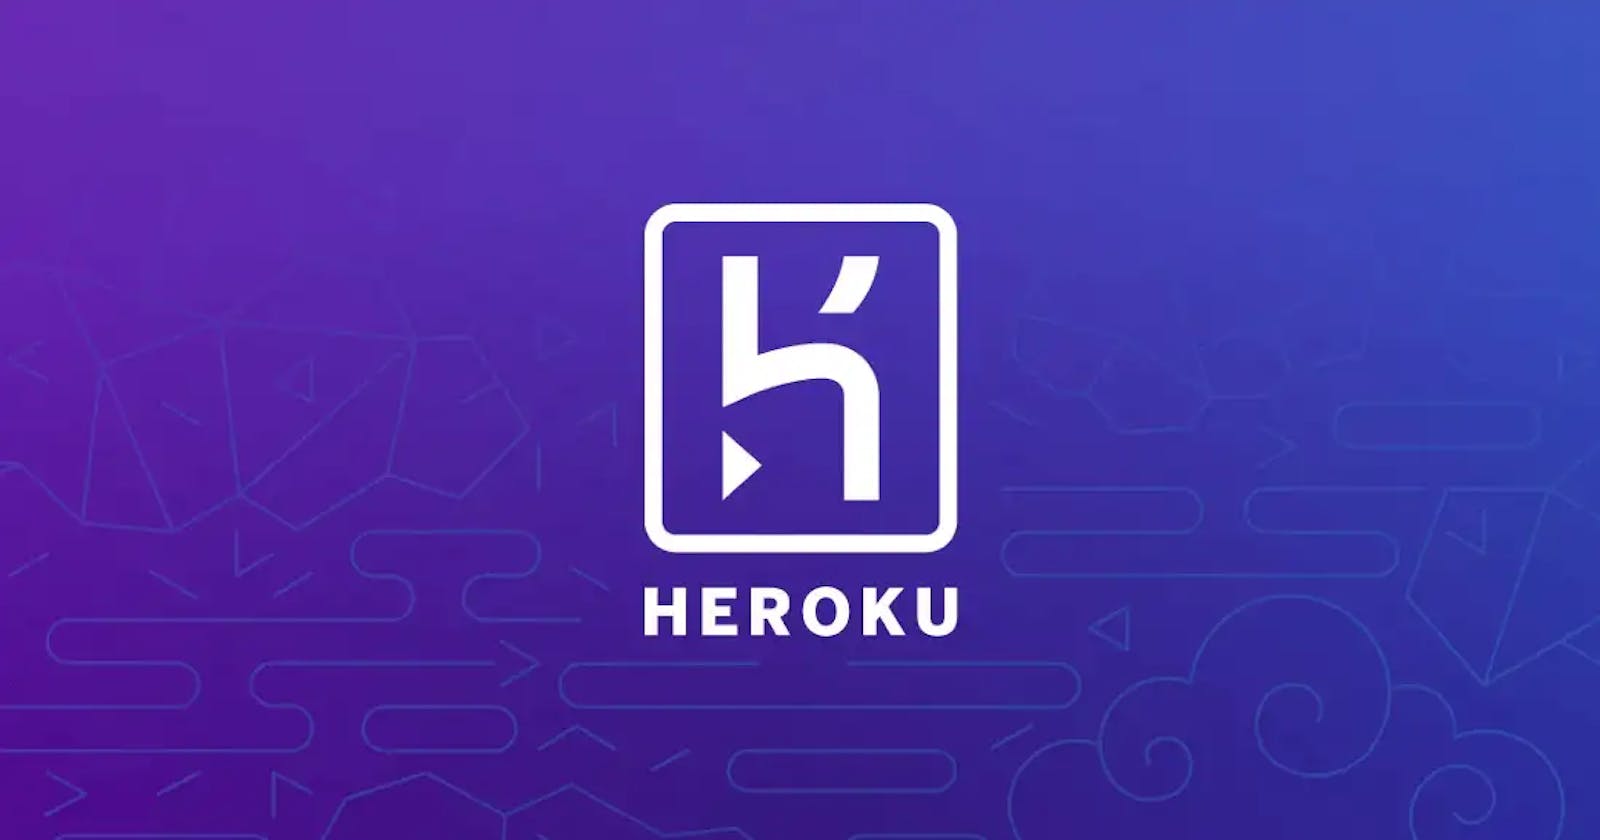 Deploying your Django app on Heroku